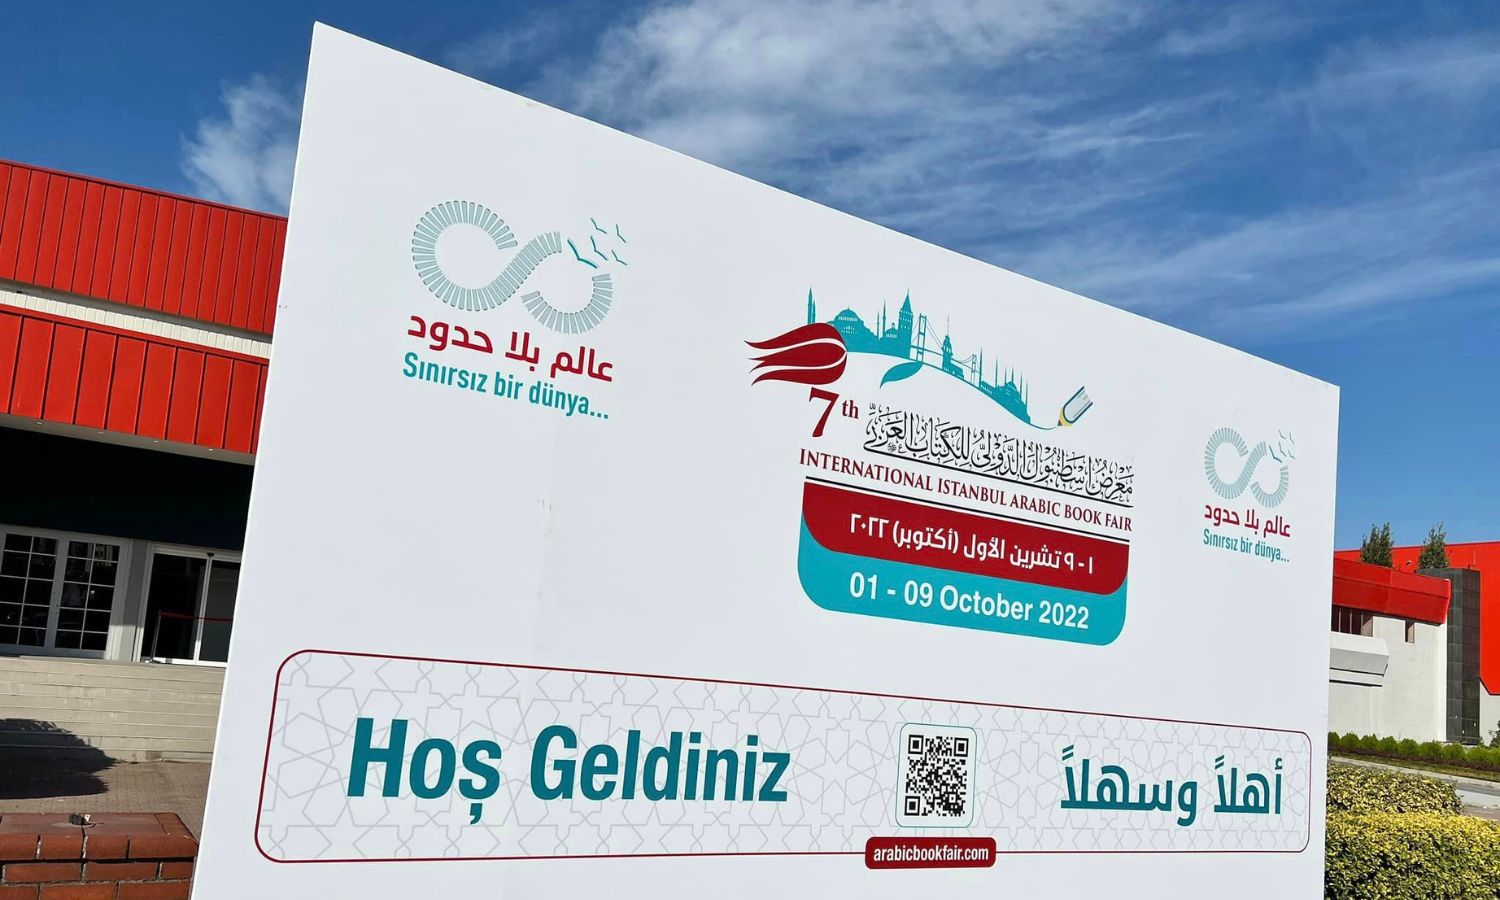 لافتة ترحيب بالزائرين لفعالية معرض "اسطنبول للكتاب العربي" من أمام مركز اسطنبول للمعارض- 1 من تشرين الأول 2022 (مكتبة استقامة/ فيس بوك)